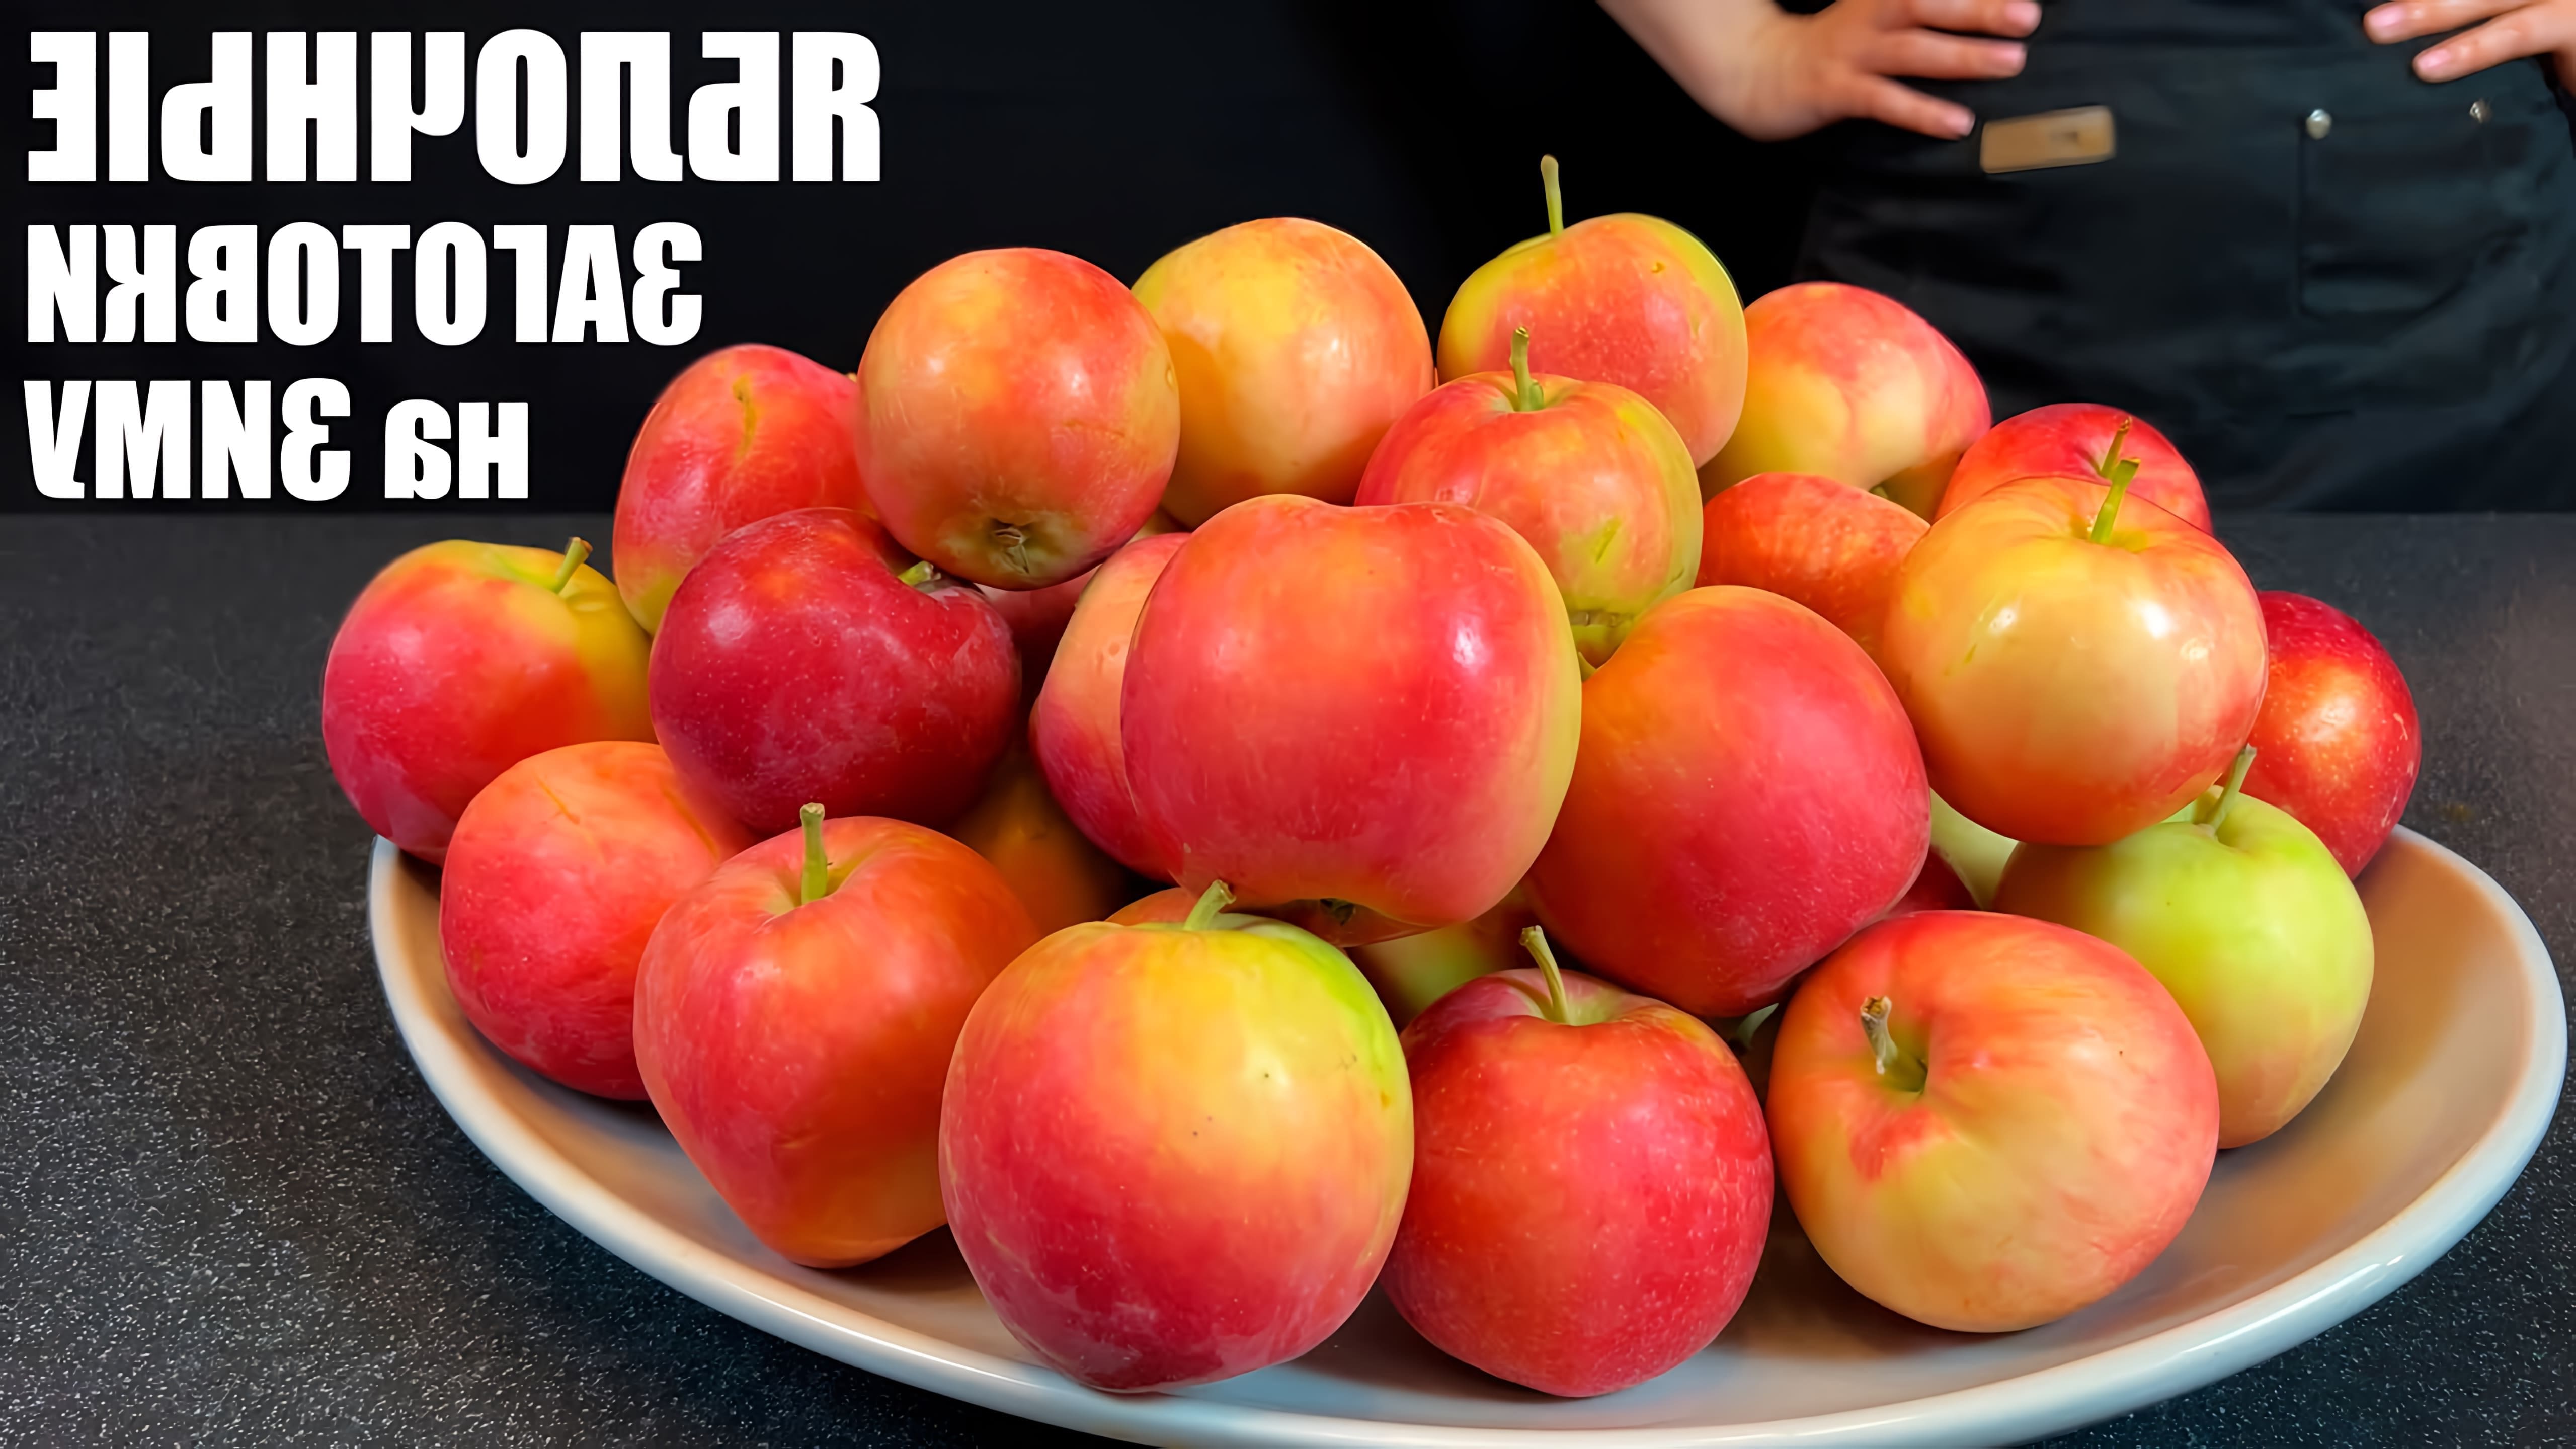 Видео рассматривает несколько рецептов для консервирования яблок на зиму, включая шоколадно-яблочное варенье, яблочные ломтики, славянские яблочные стружки и яблочное пюре